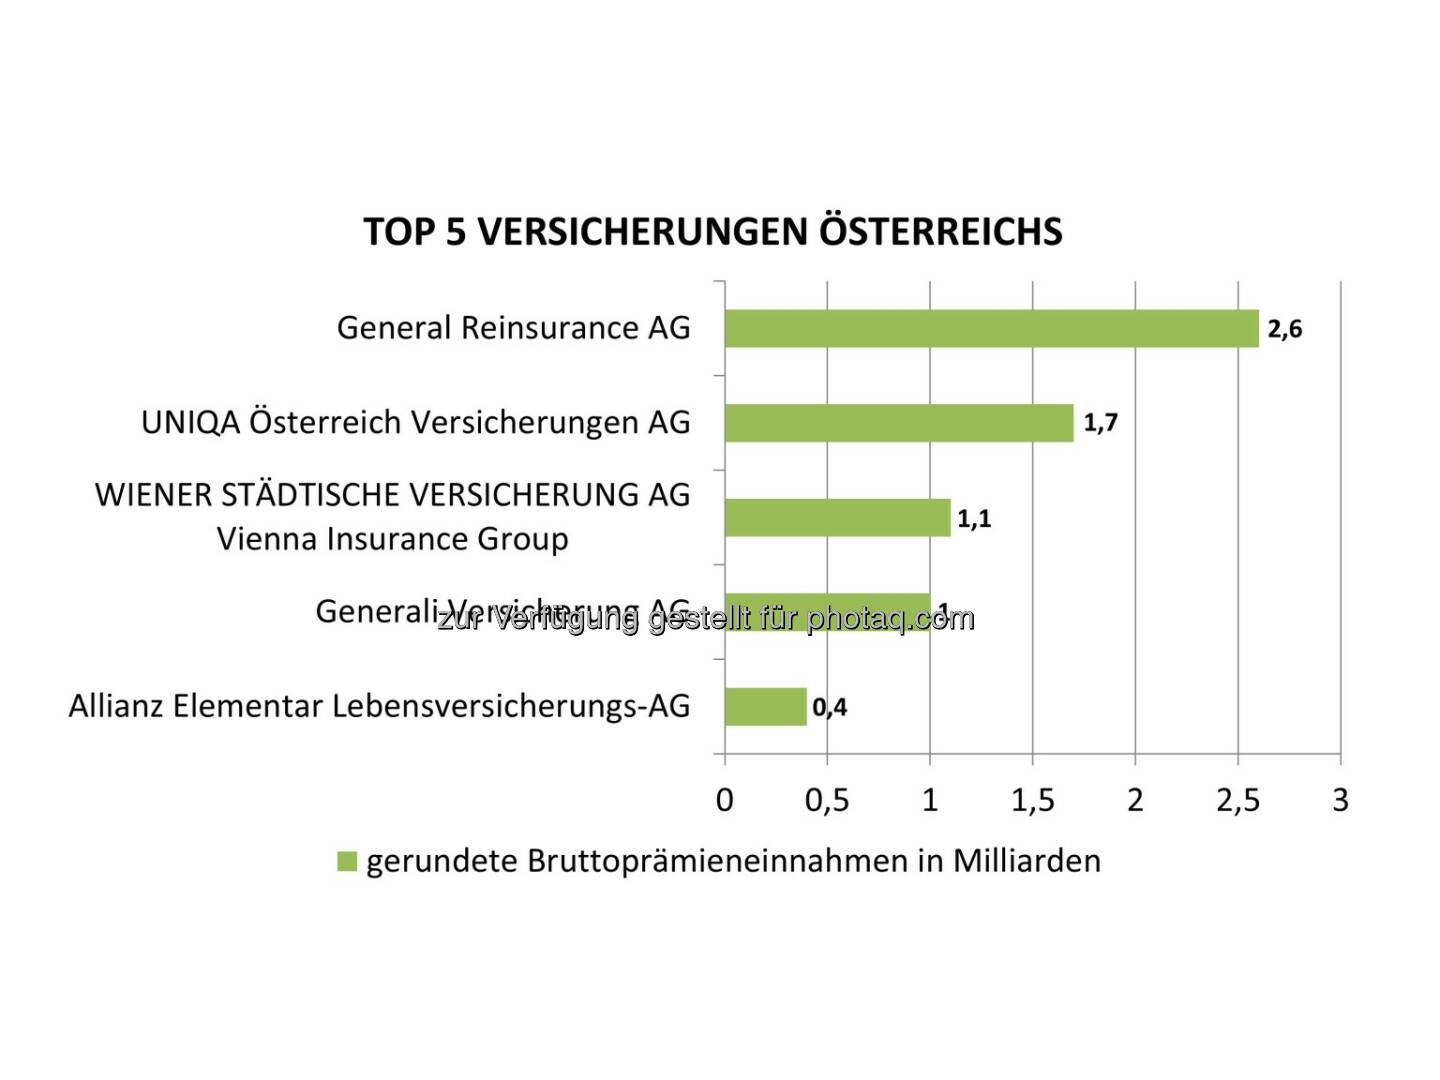 Grafik Top 5 Versicherungen Österreichs nach Bruttoprämieneinnahmen . Fotocredit: Bisnode D&B Austria